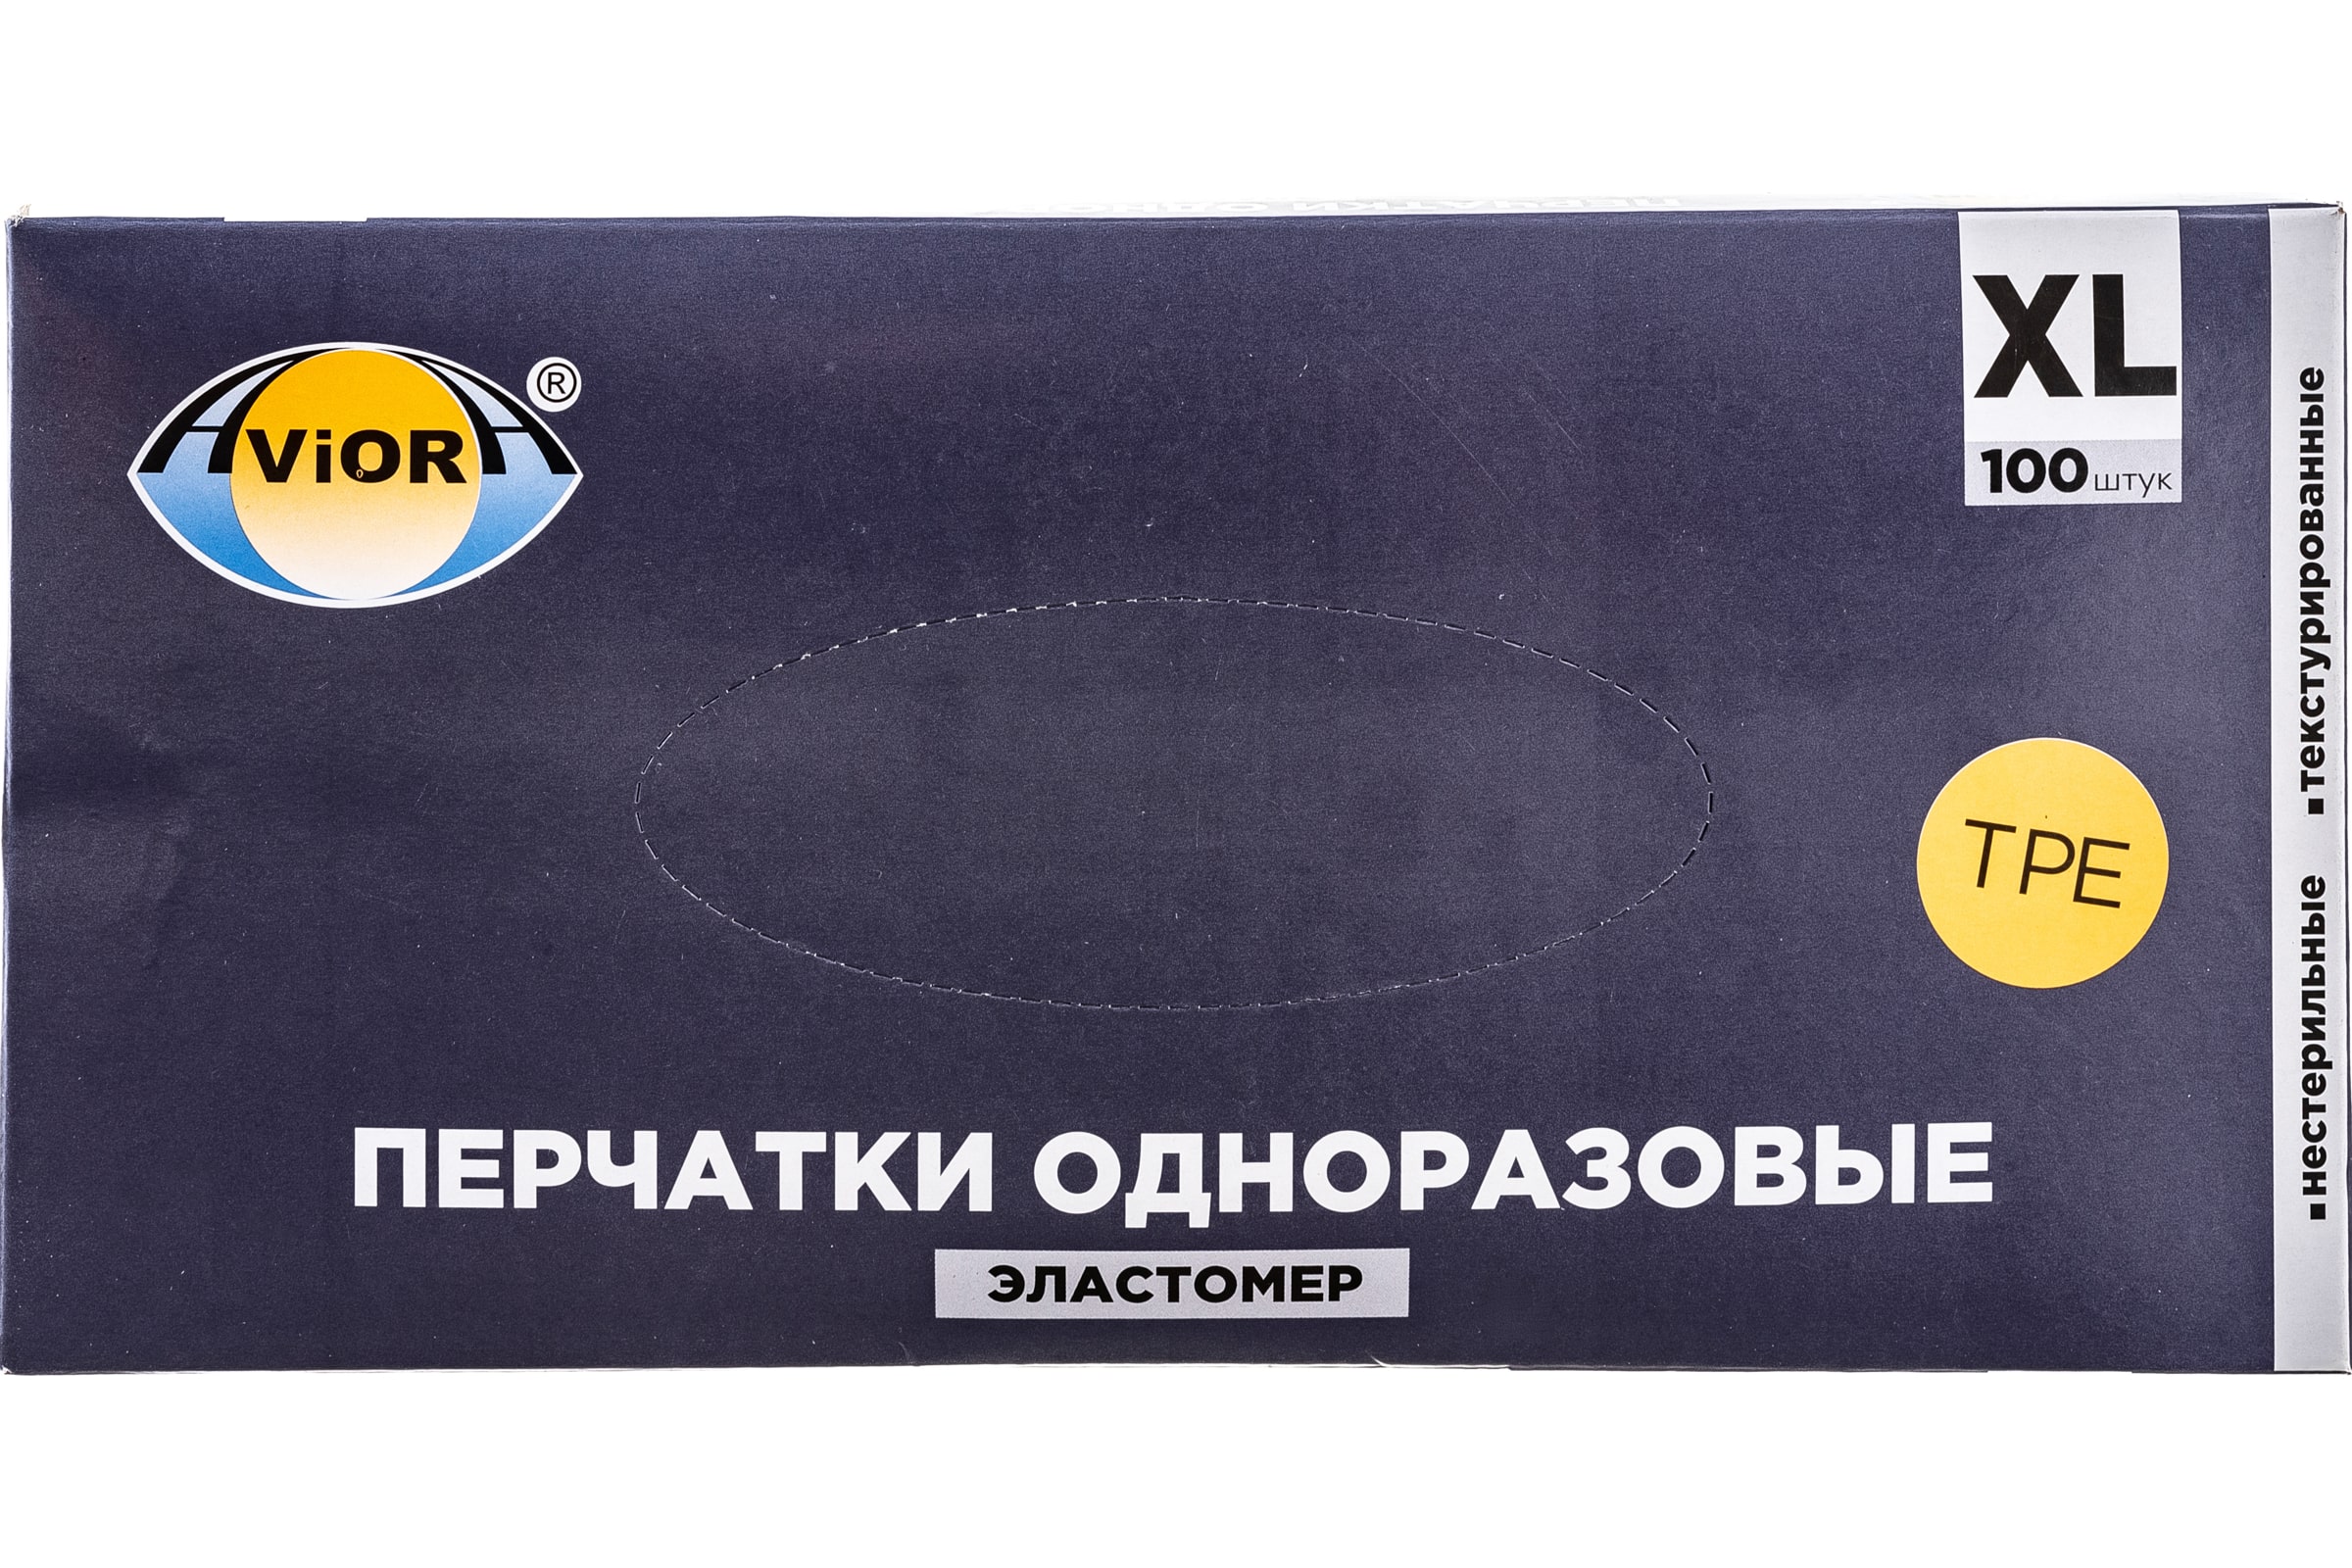 Перчатки AVIORA 402-753 одноразовые, эластомер, размер ХL, 100 шт в упаковке